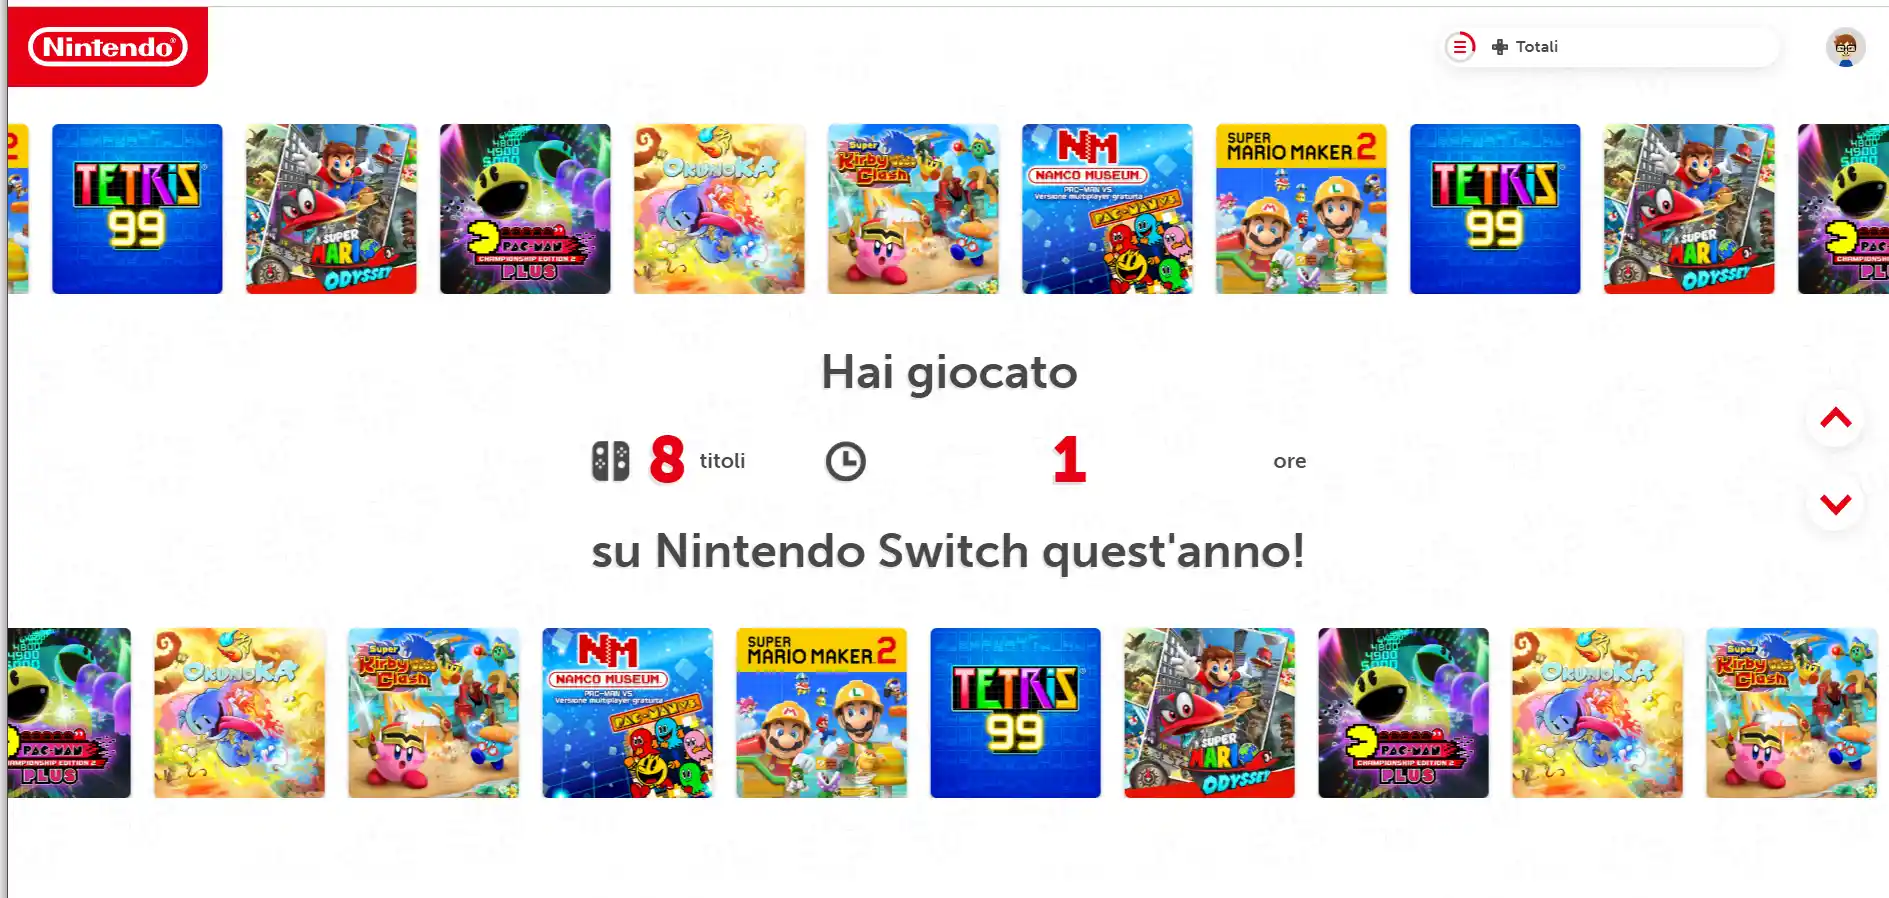 Nintendo Switch Anno in Rassegna 2023 - come controllare il recap delle statistiche di gioco